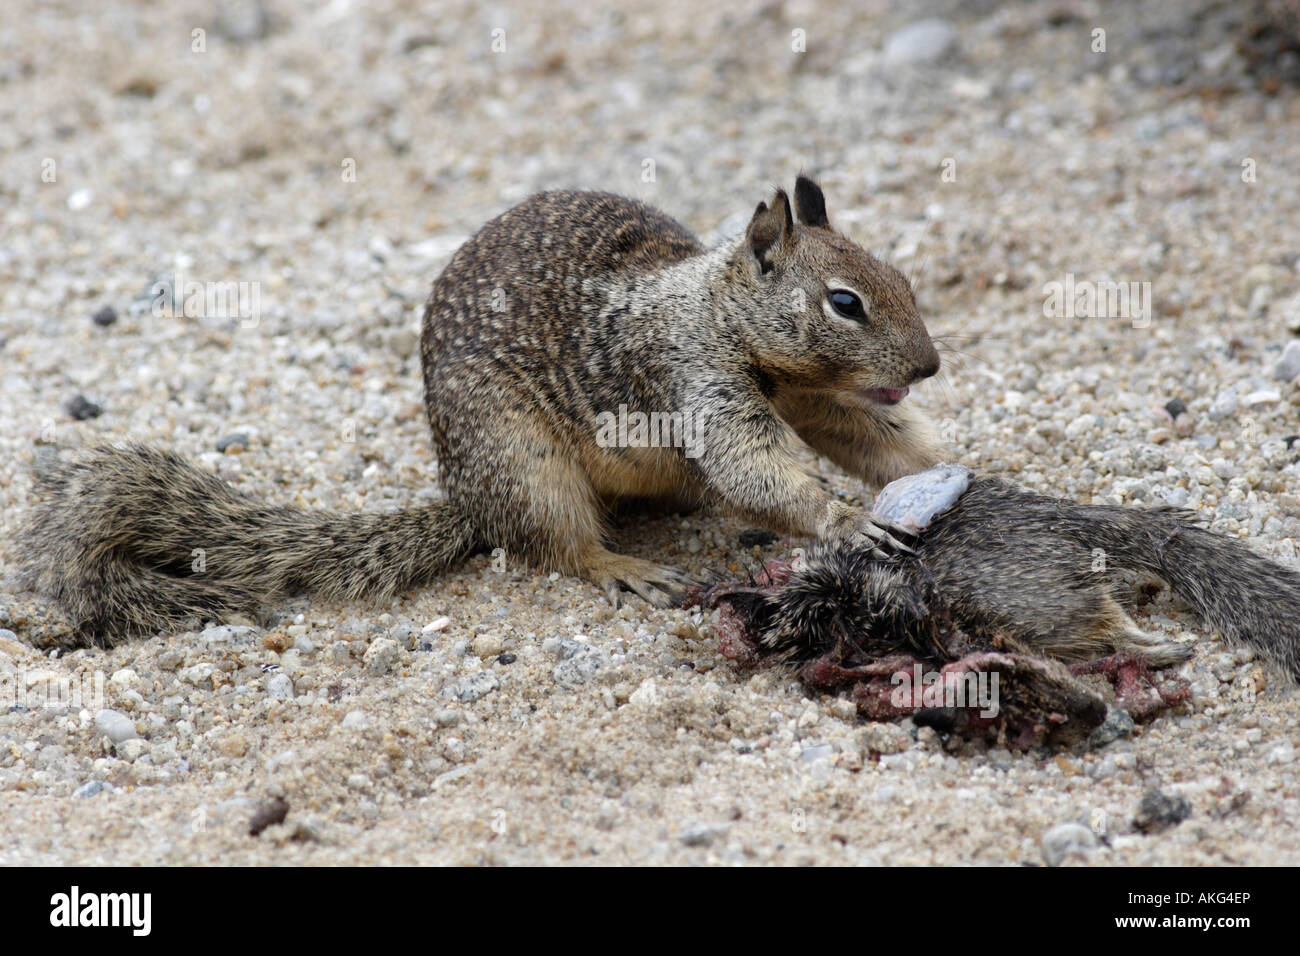 Eichhörnchen Essen ein totes Eichhörnchen. Das sind östliche große Eichhörnchen. Sie kannibalisieren oft ihre eigenen. Stockfoto